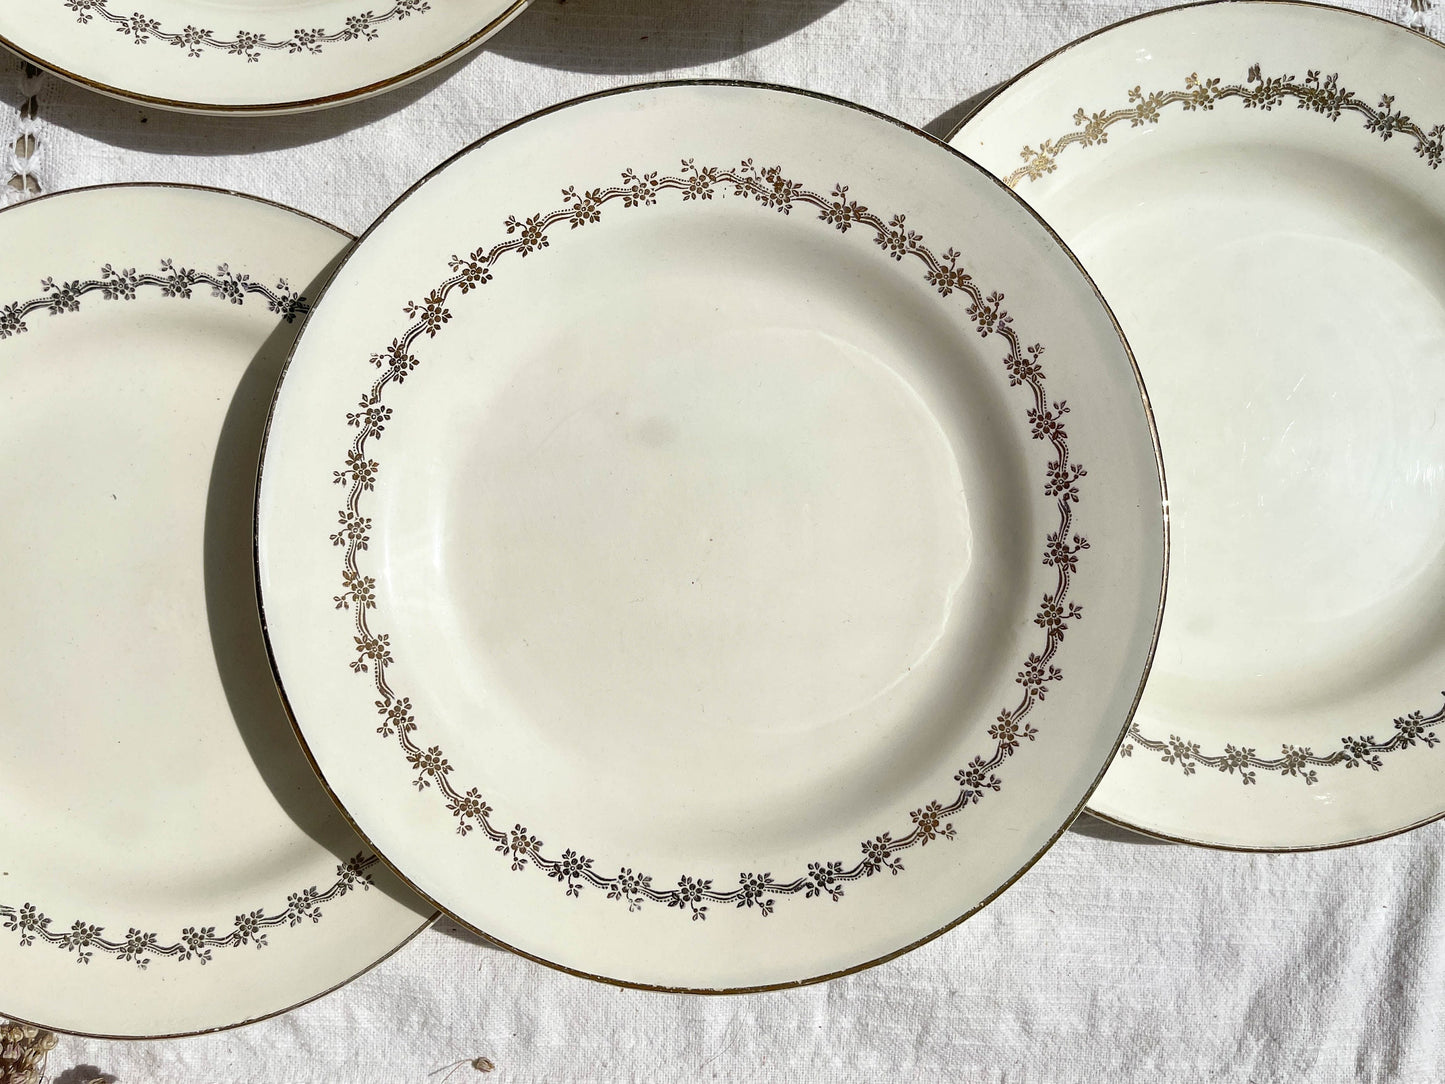 6 Assiettes plates en porcelaine opaque DIGOIN modèle SUZY - violn.fr